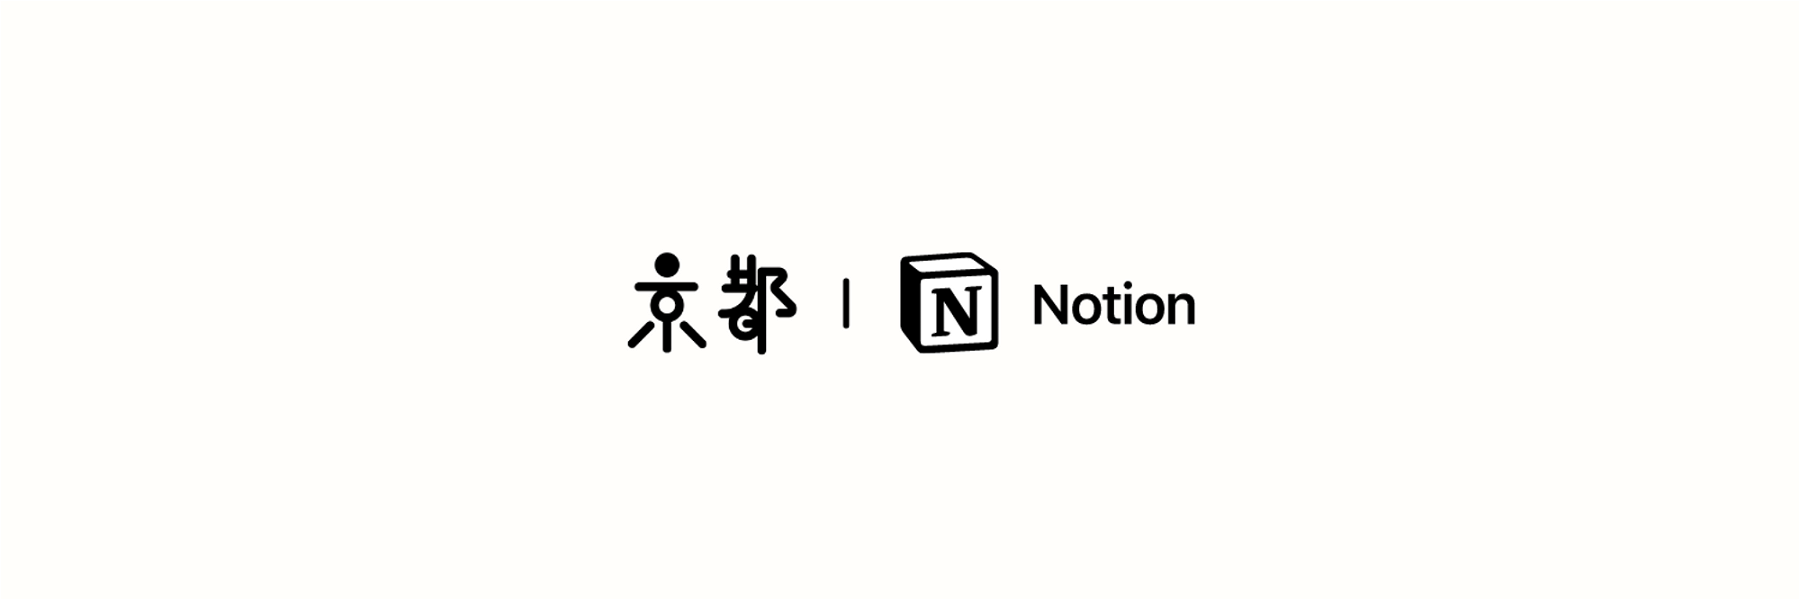 Notion Kyoto Community